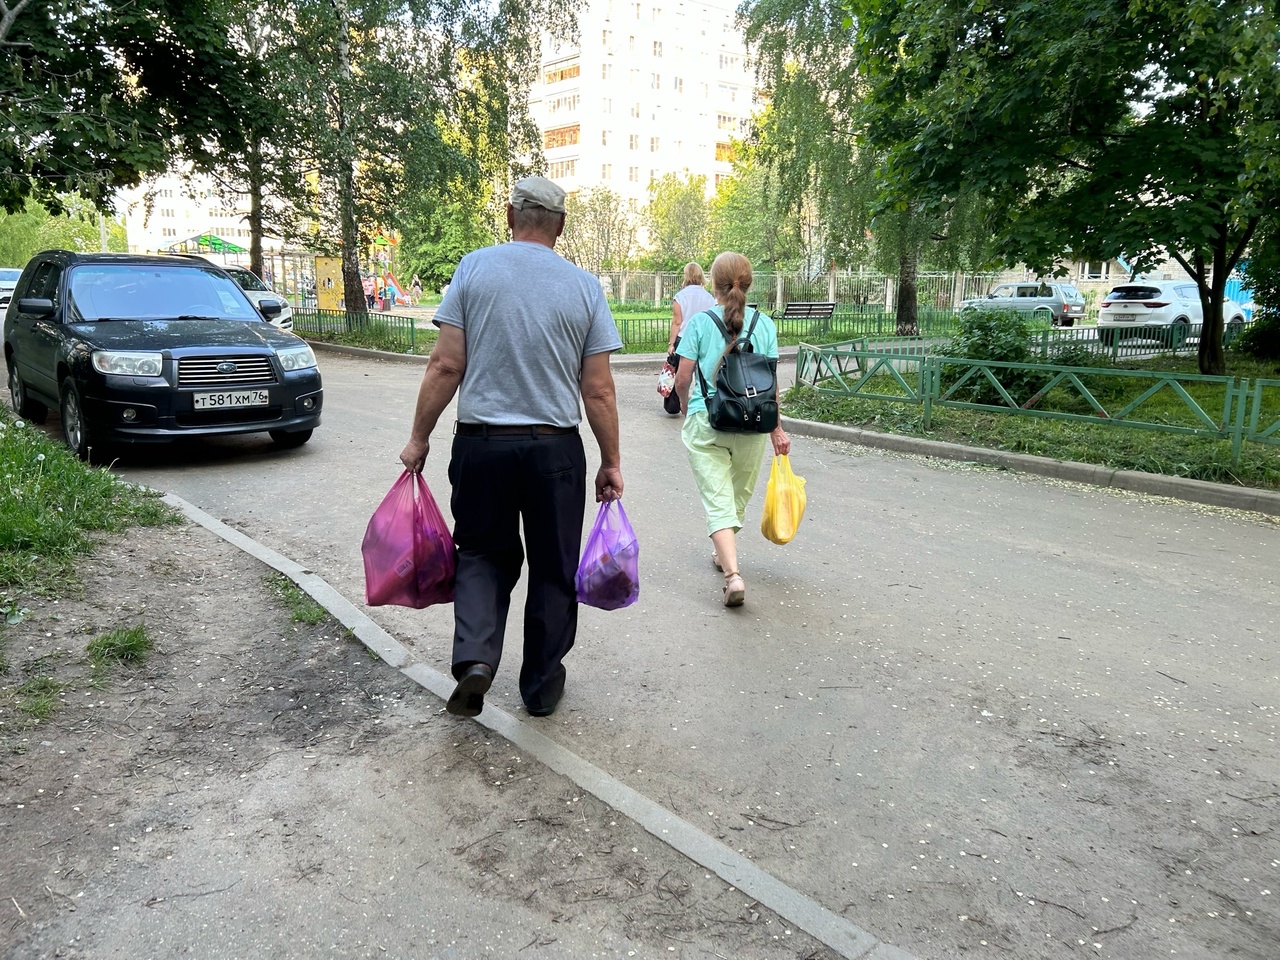 В Ярославле могут начать раздавать пенсионерам просроченные продукты